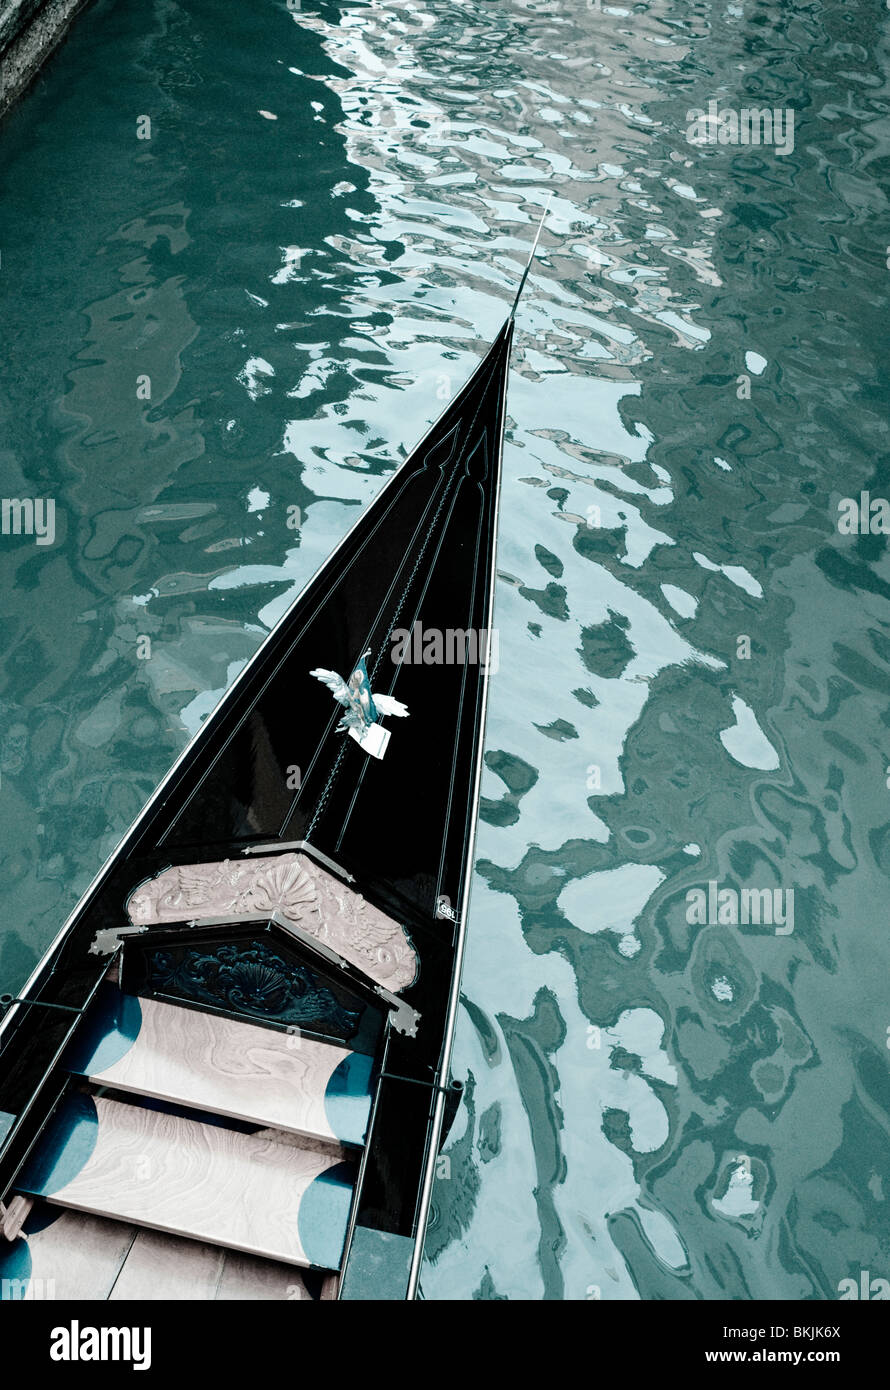 Image de tons sur canal gondole à Venise Italie Banque D'Images